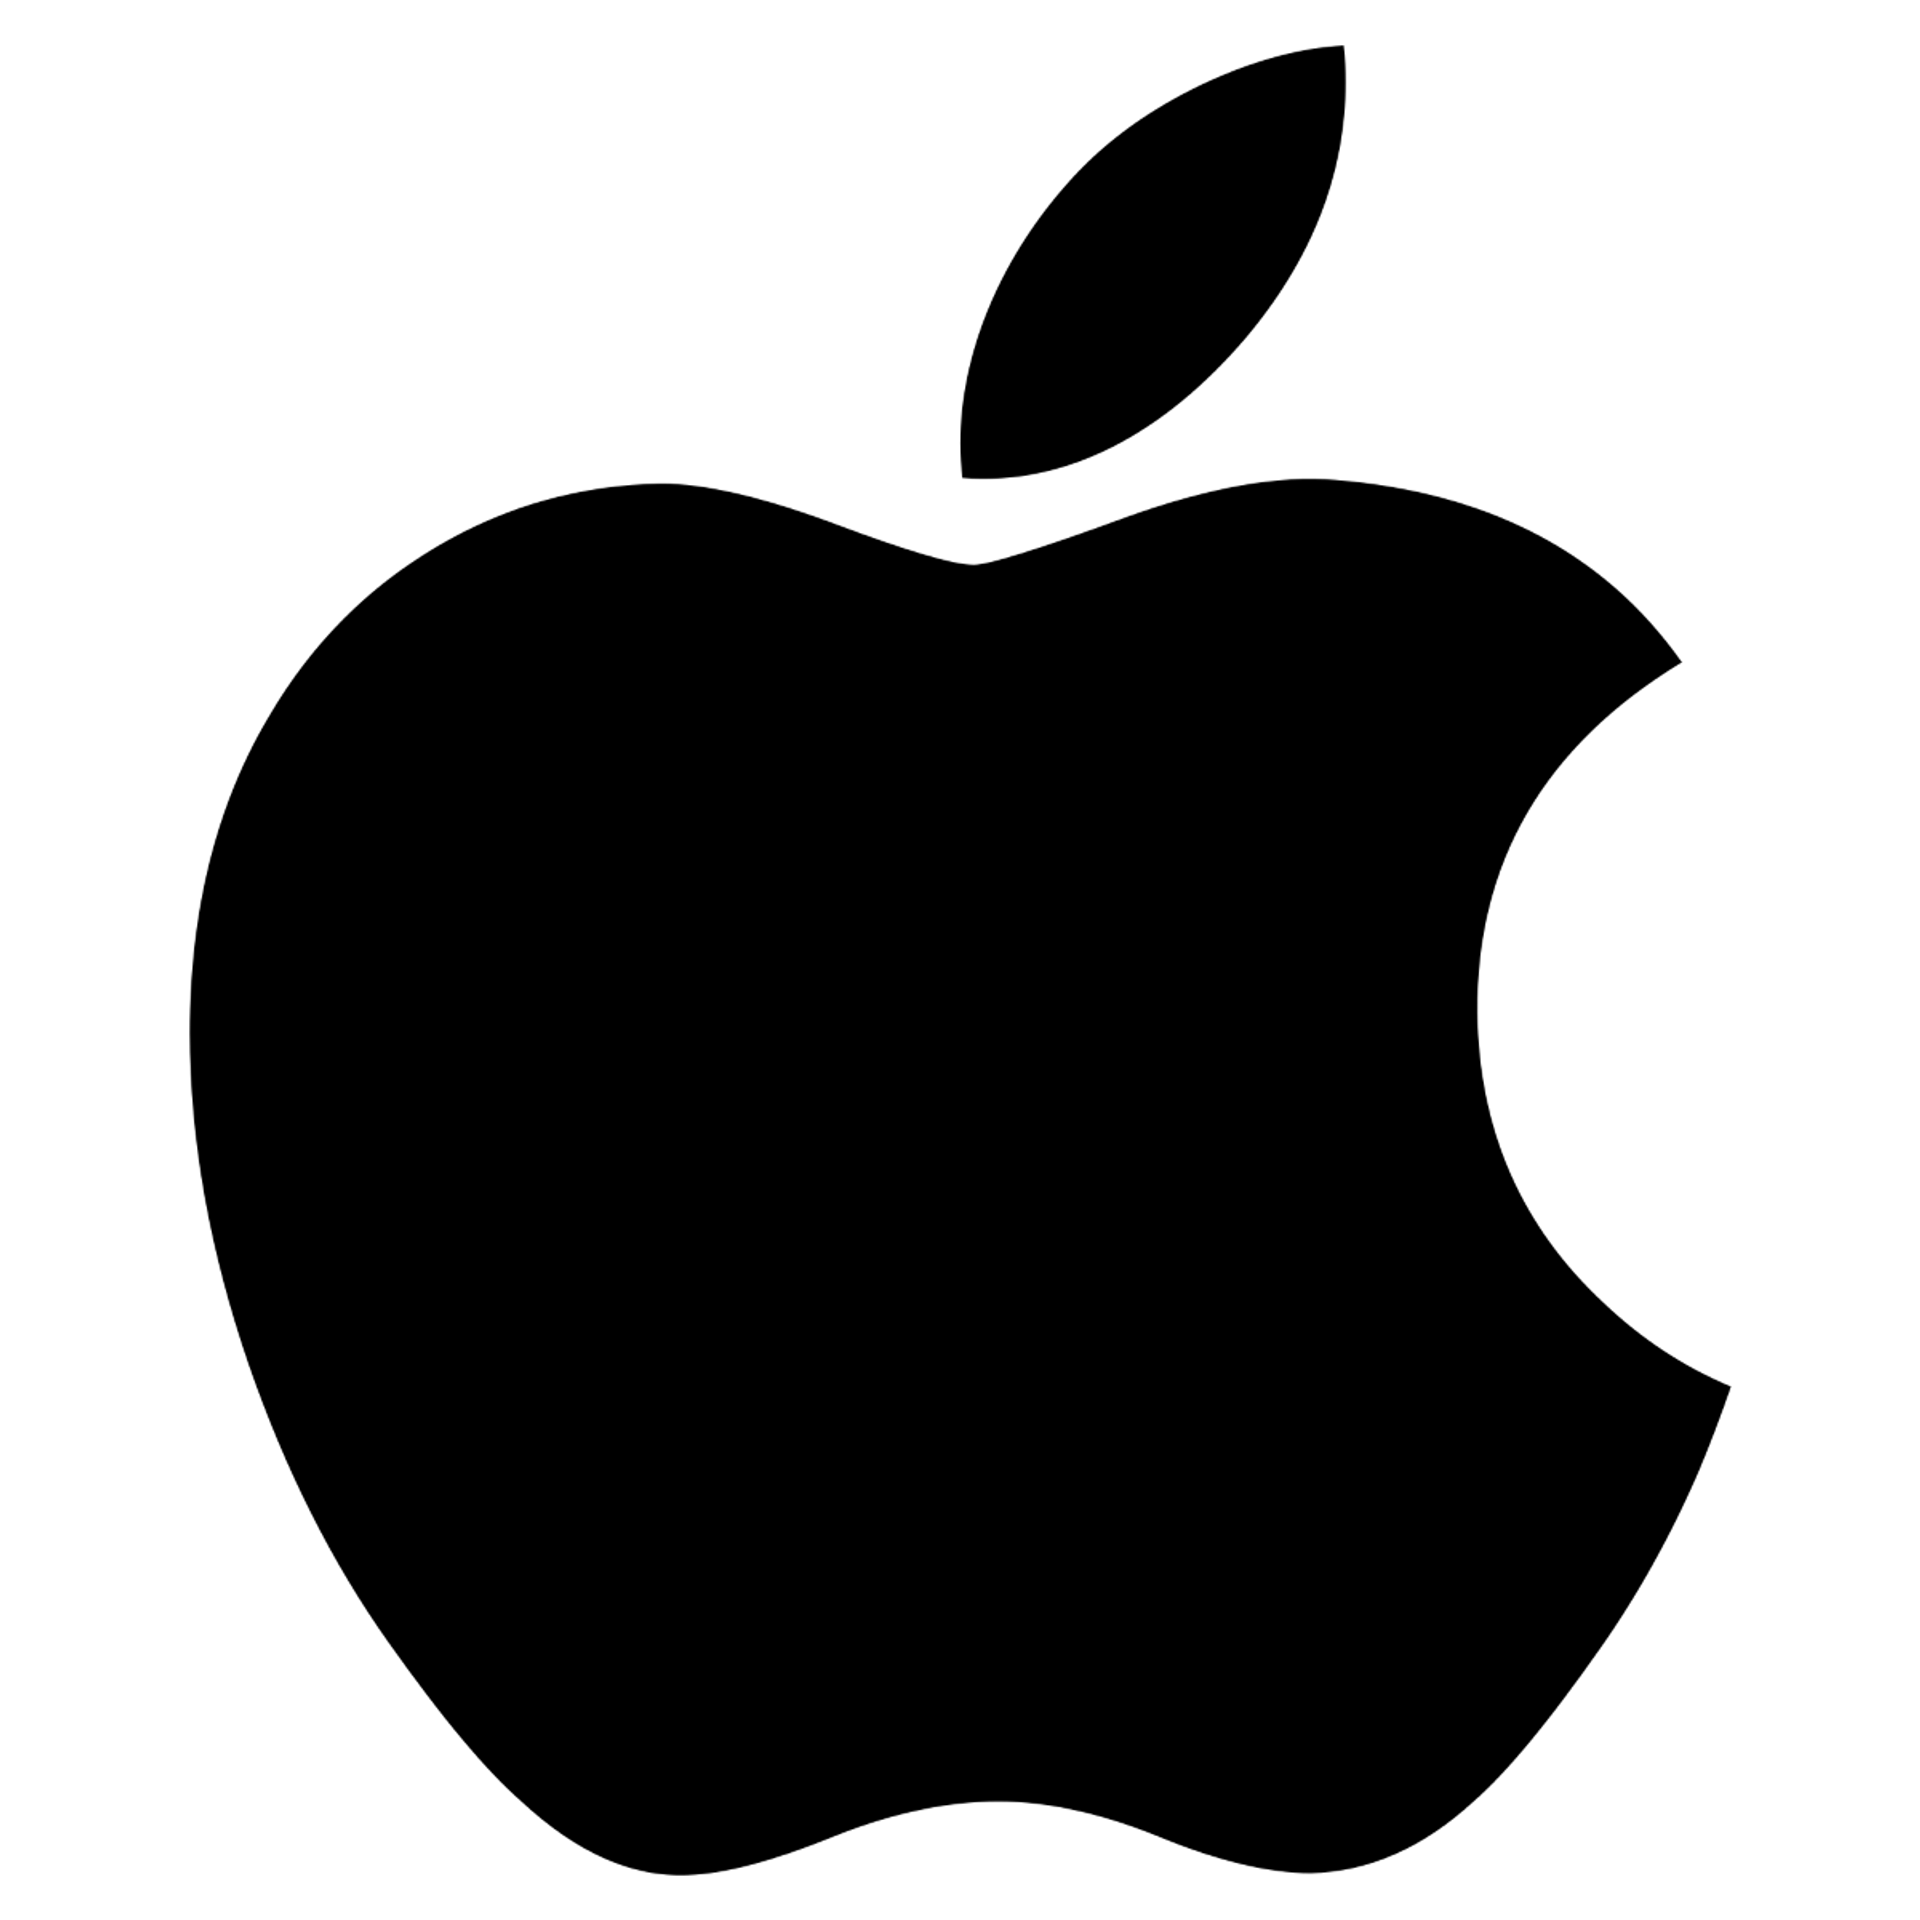 APPLE logo die aktuell Flugblatt